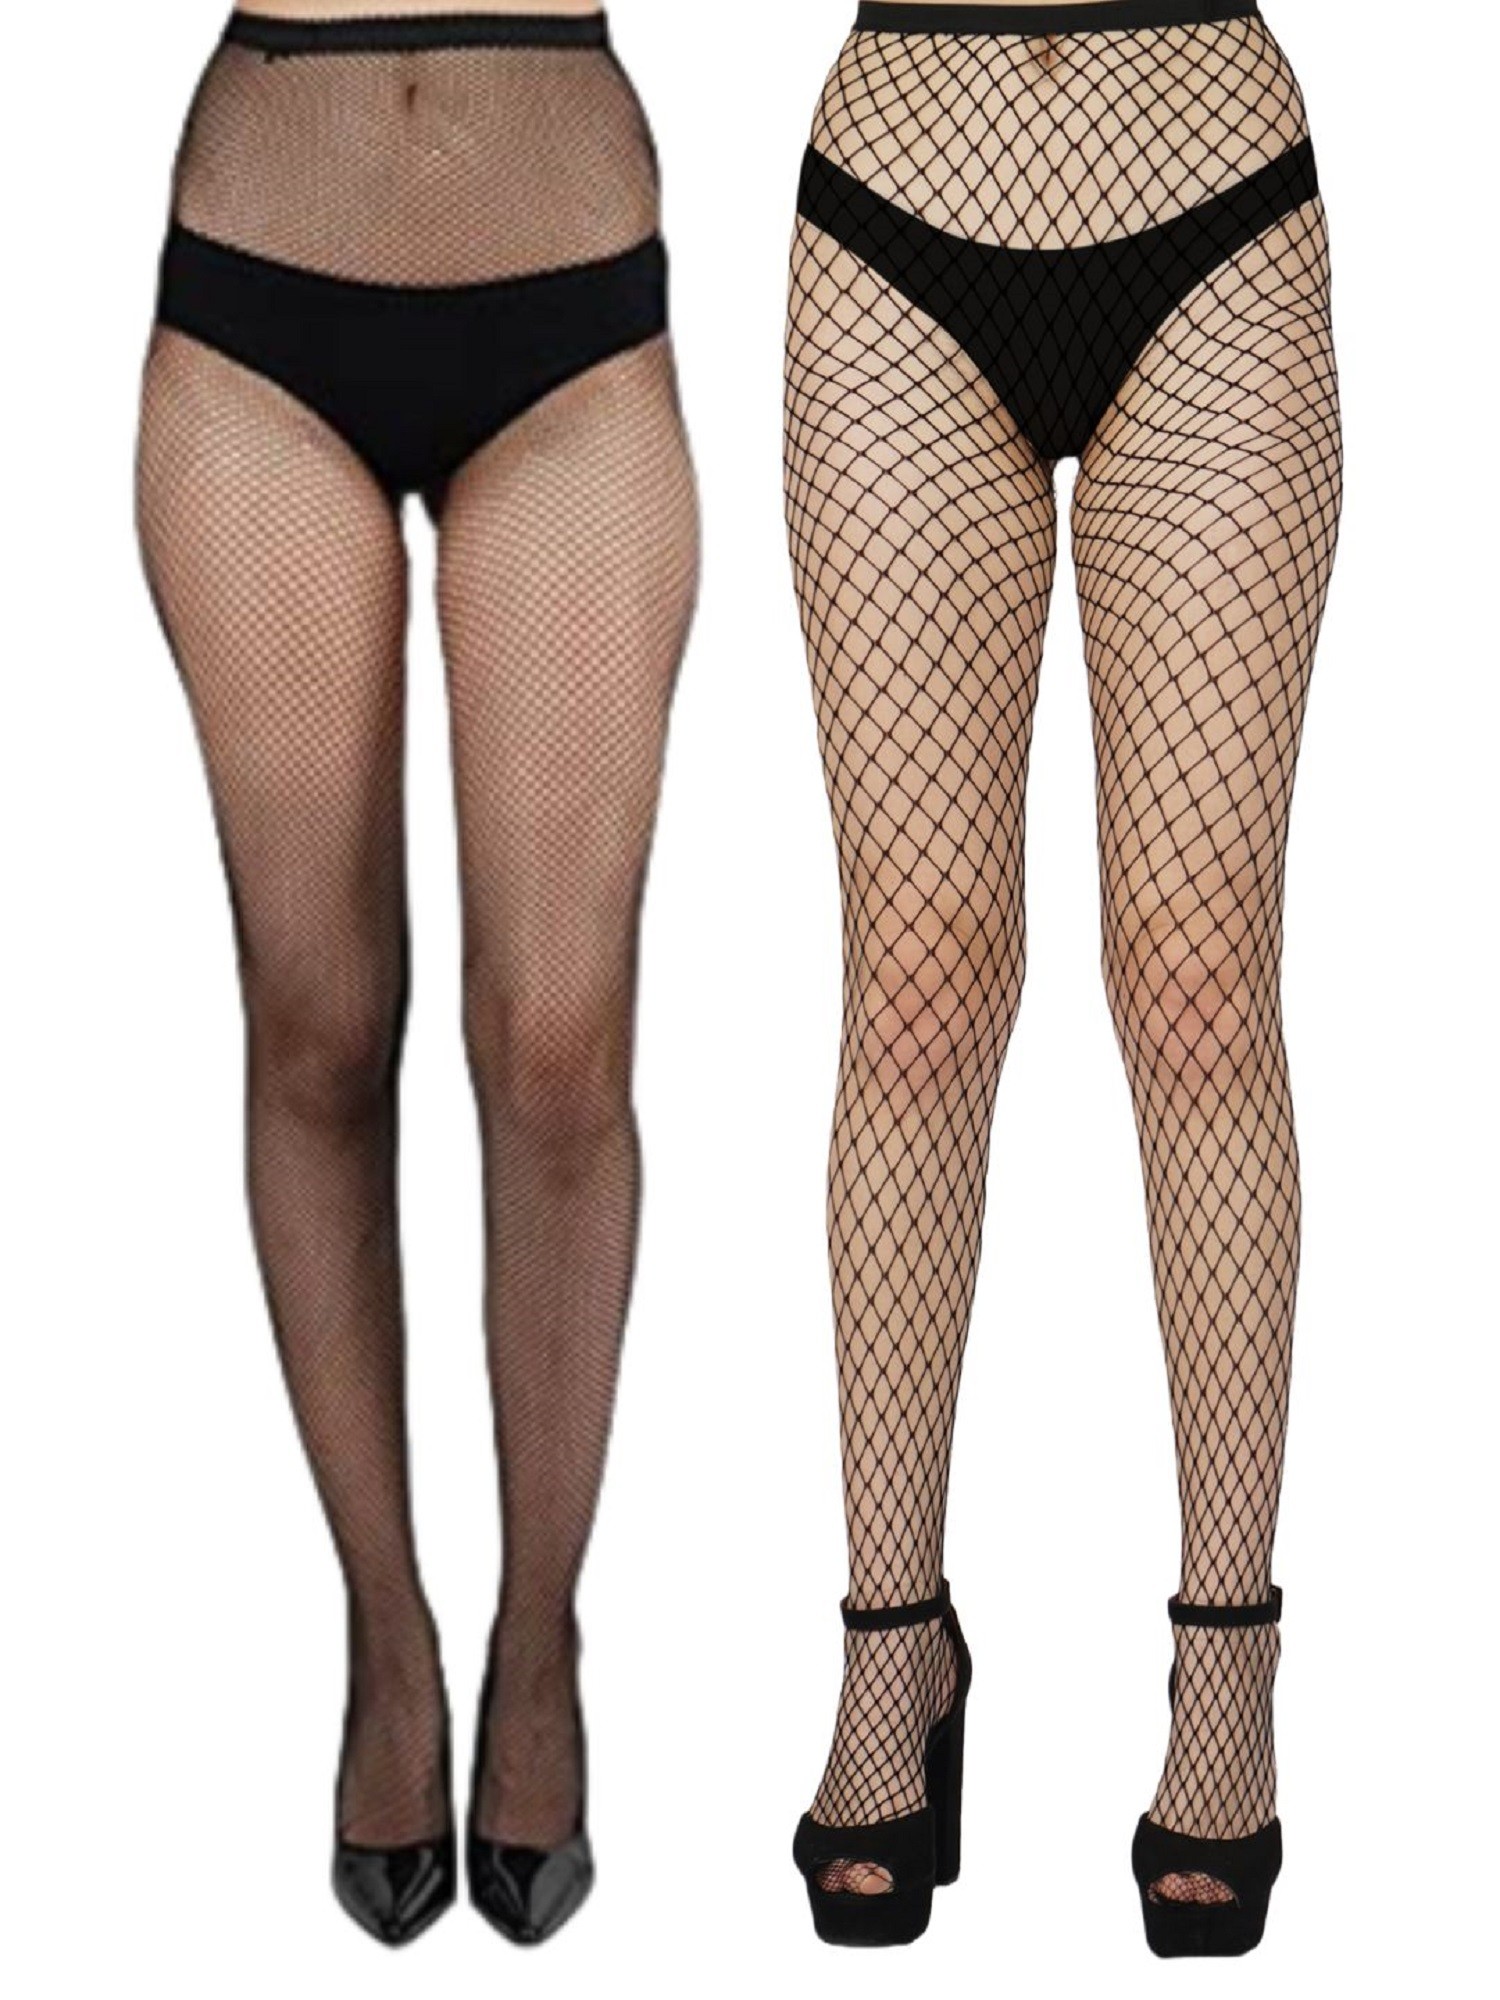 NEXT2SKIN Women's Fishnet Pattern Mesh Pantyhose Stockings Pack of 2 (Black, SmallNet-LargeNet)